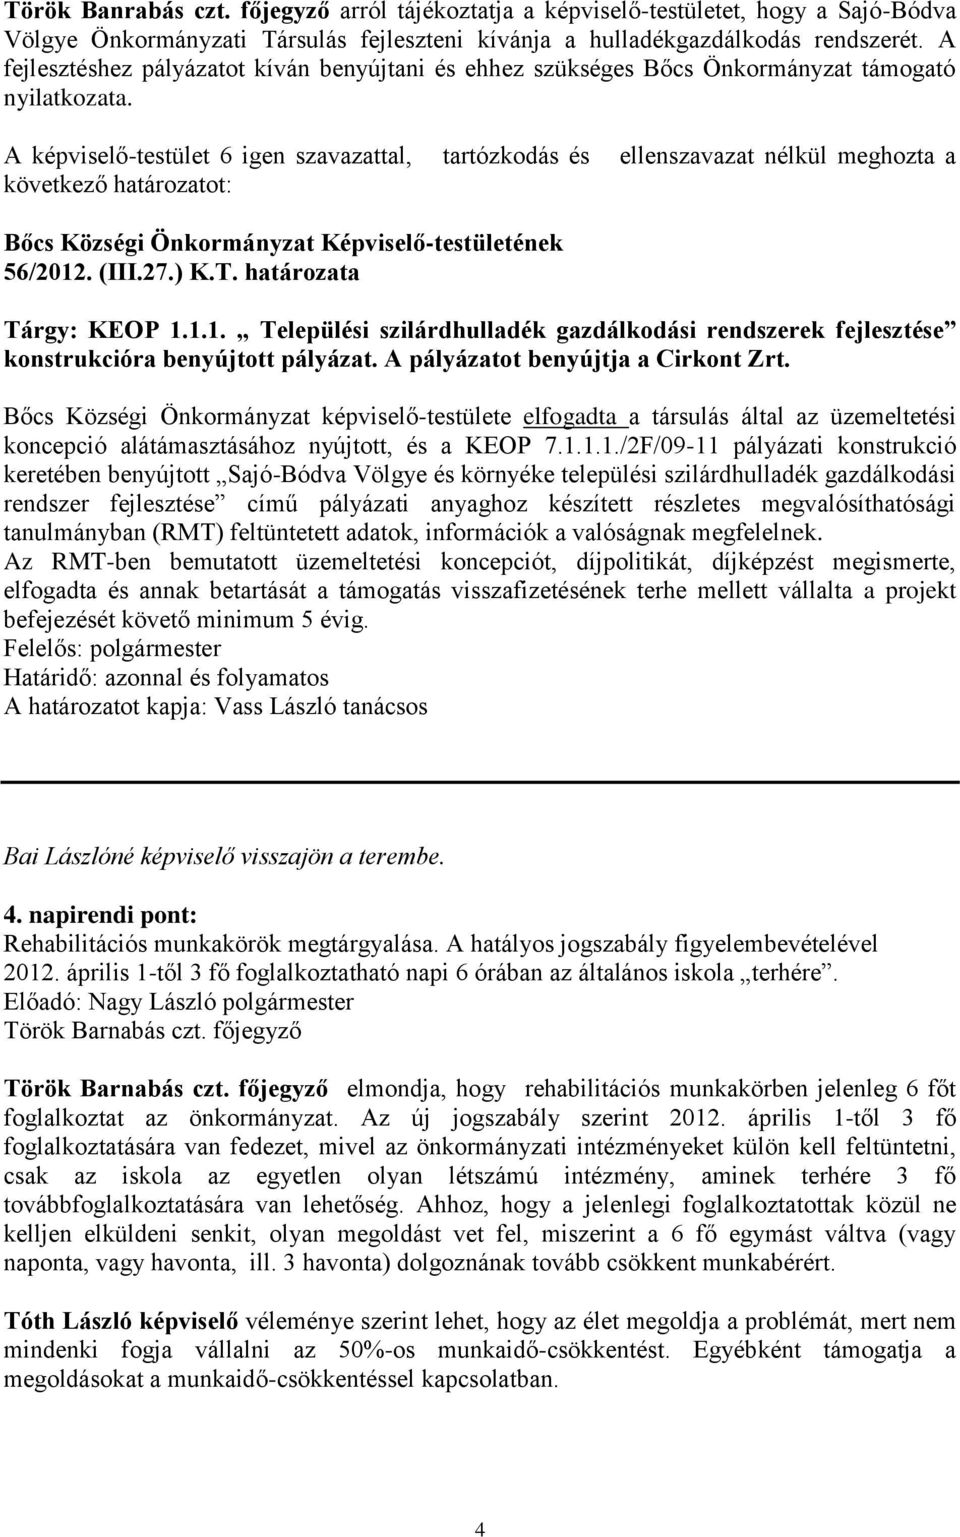 (III.27.) K.T. határozata Tárgy: KEOP 1.1.1. Települési szilárdhulladék gazdálkodási rendszerek fejlesztése konstrukcióra benyújtott pályázat. A pályázatot benyújtja a Cirkont Zrt.